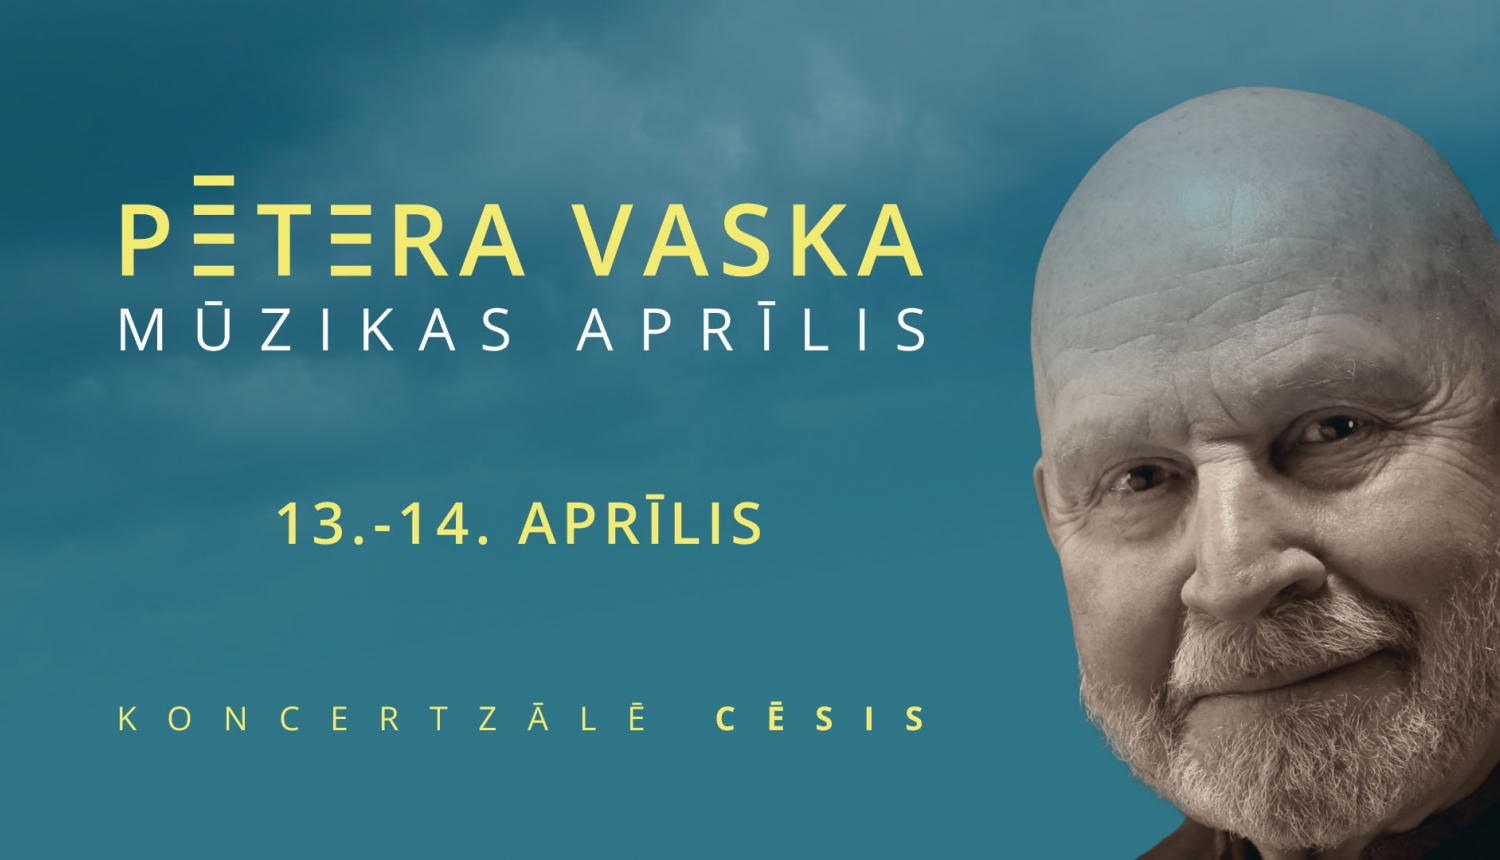 Pētera Vaska mūzikas aprīlis - teksts un vizuālais materiāls